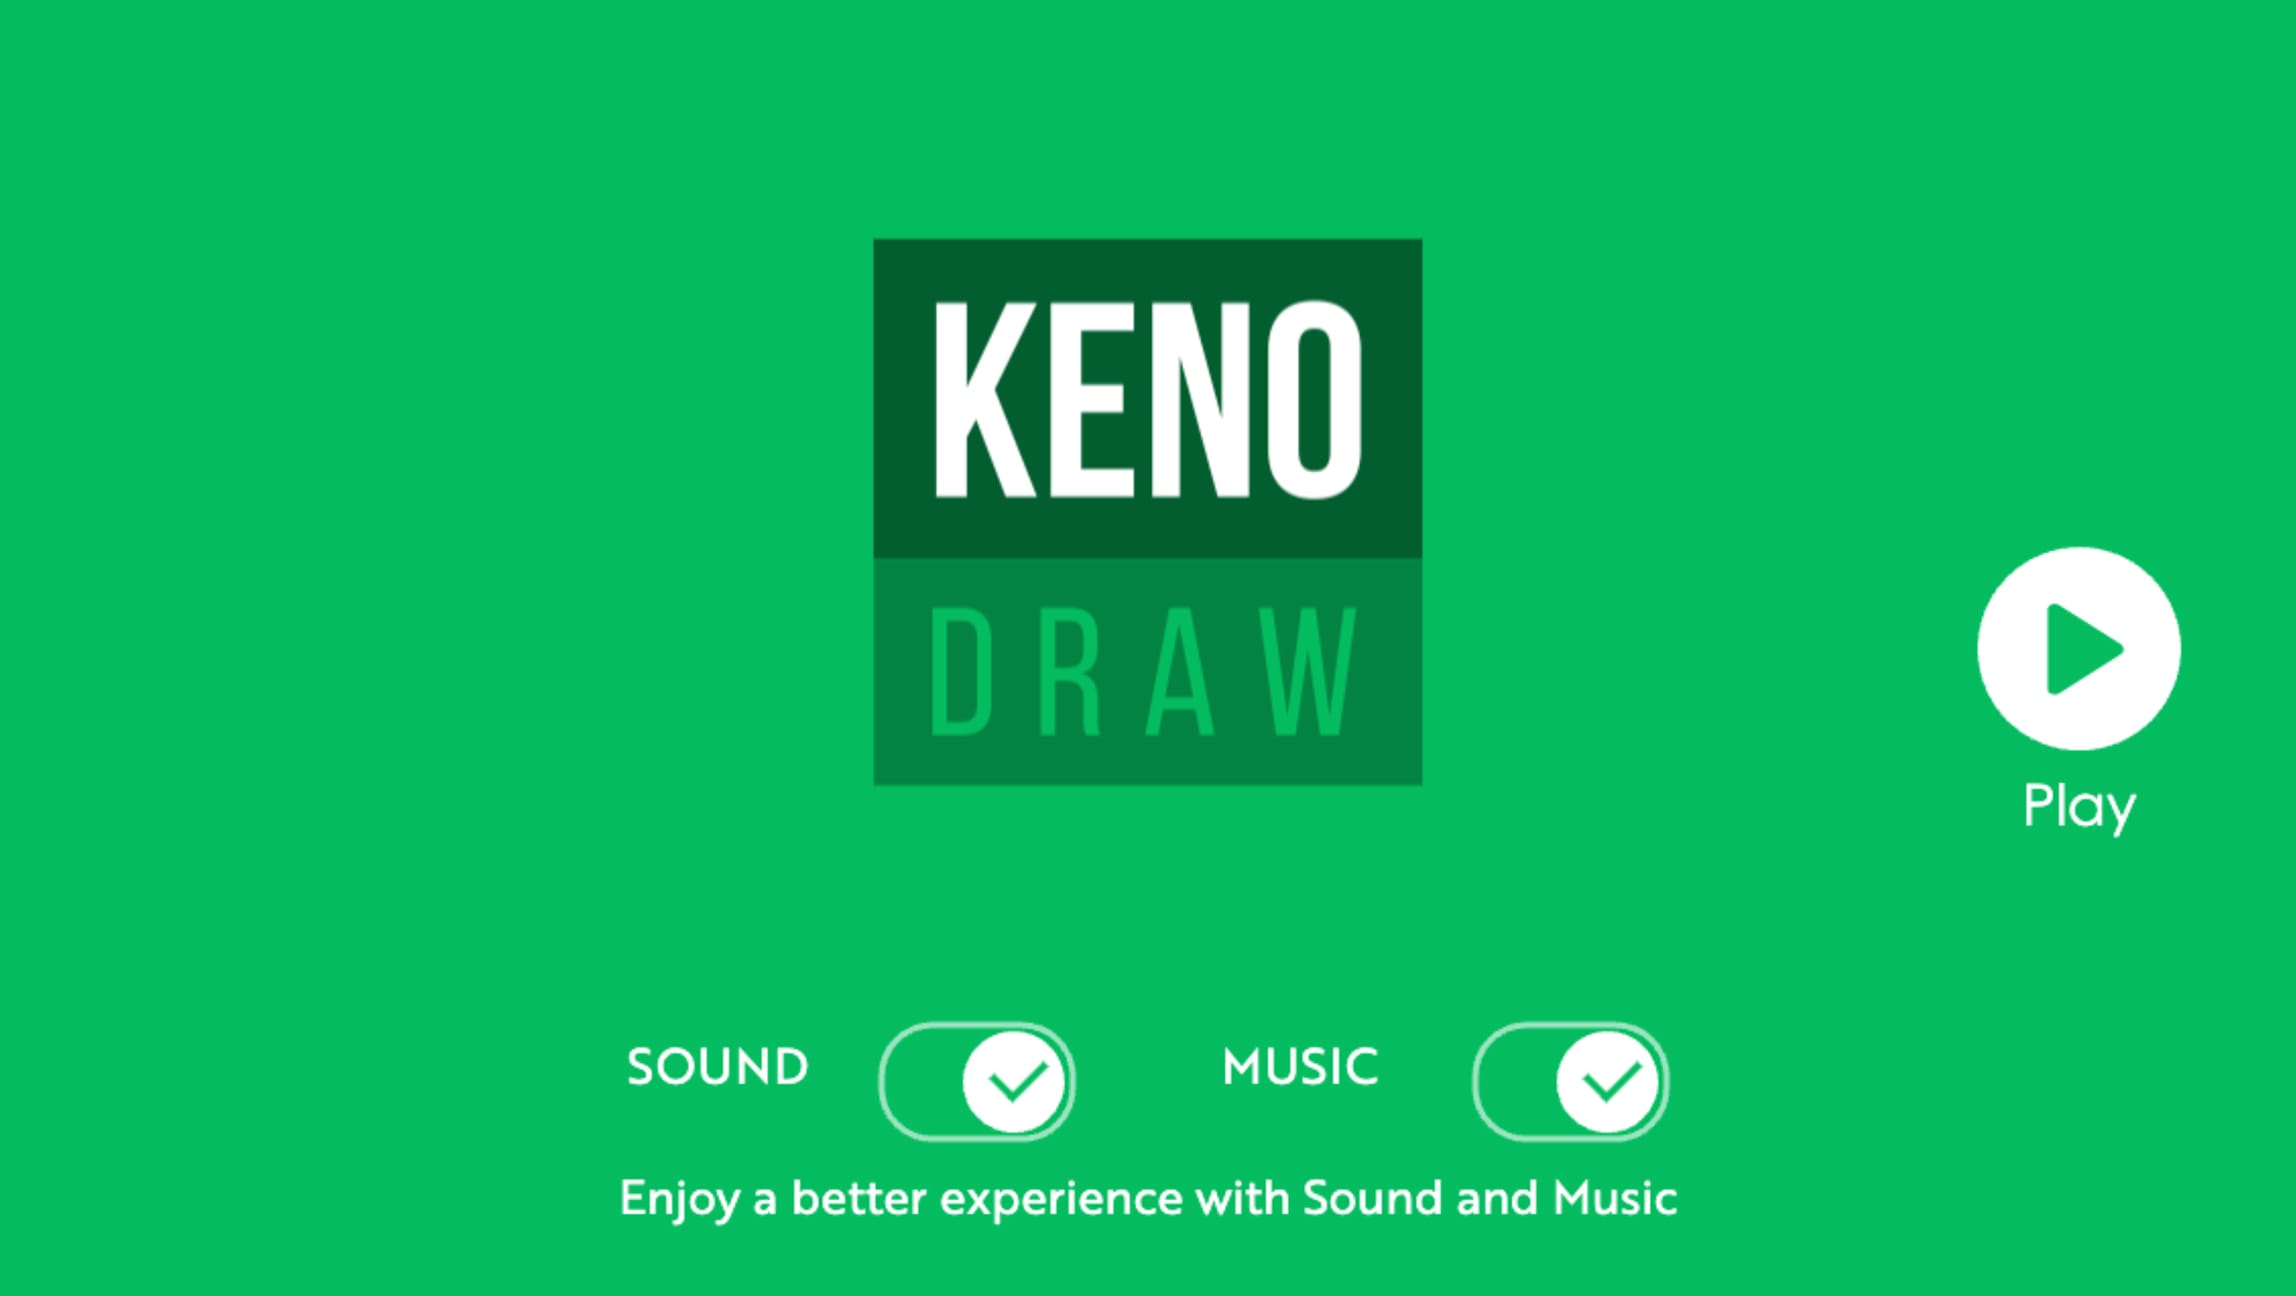 Keno draw game screen